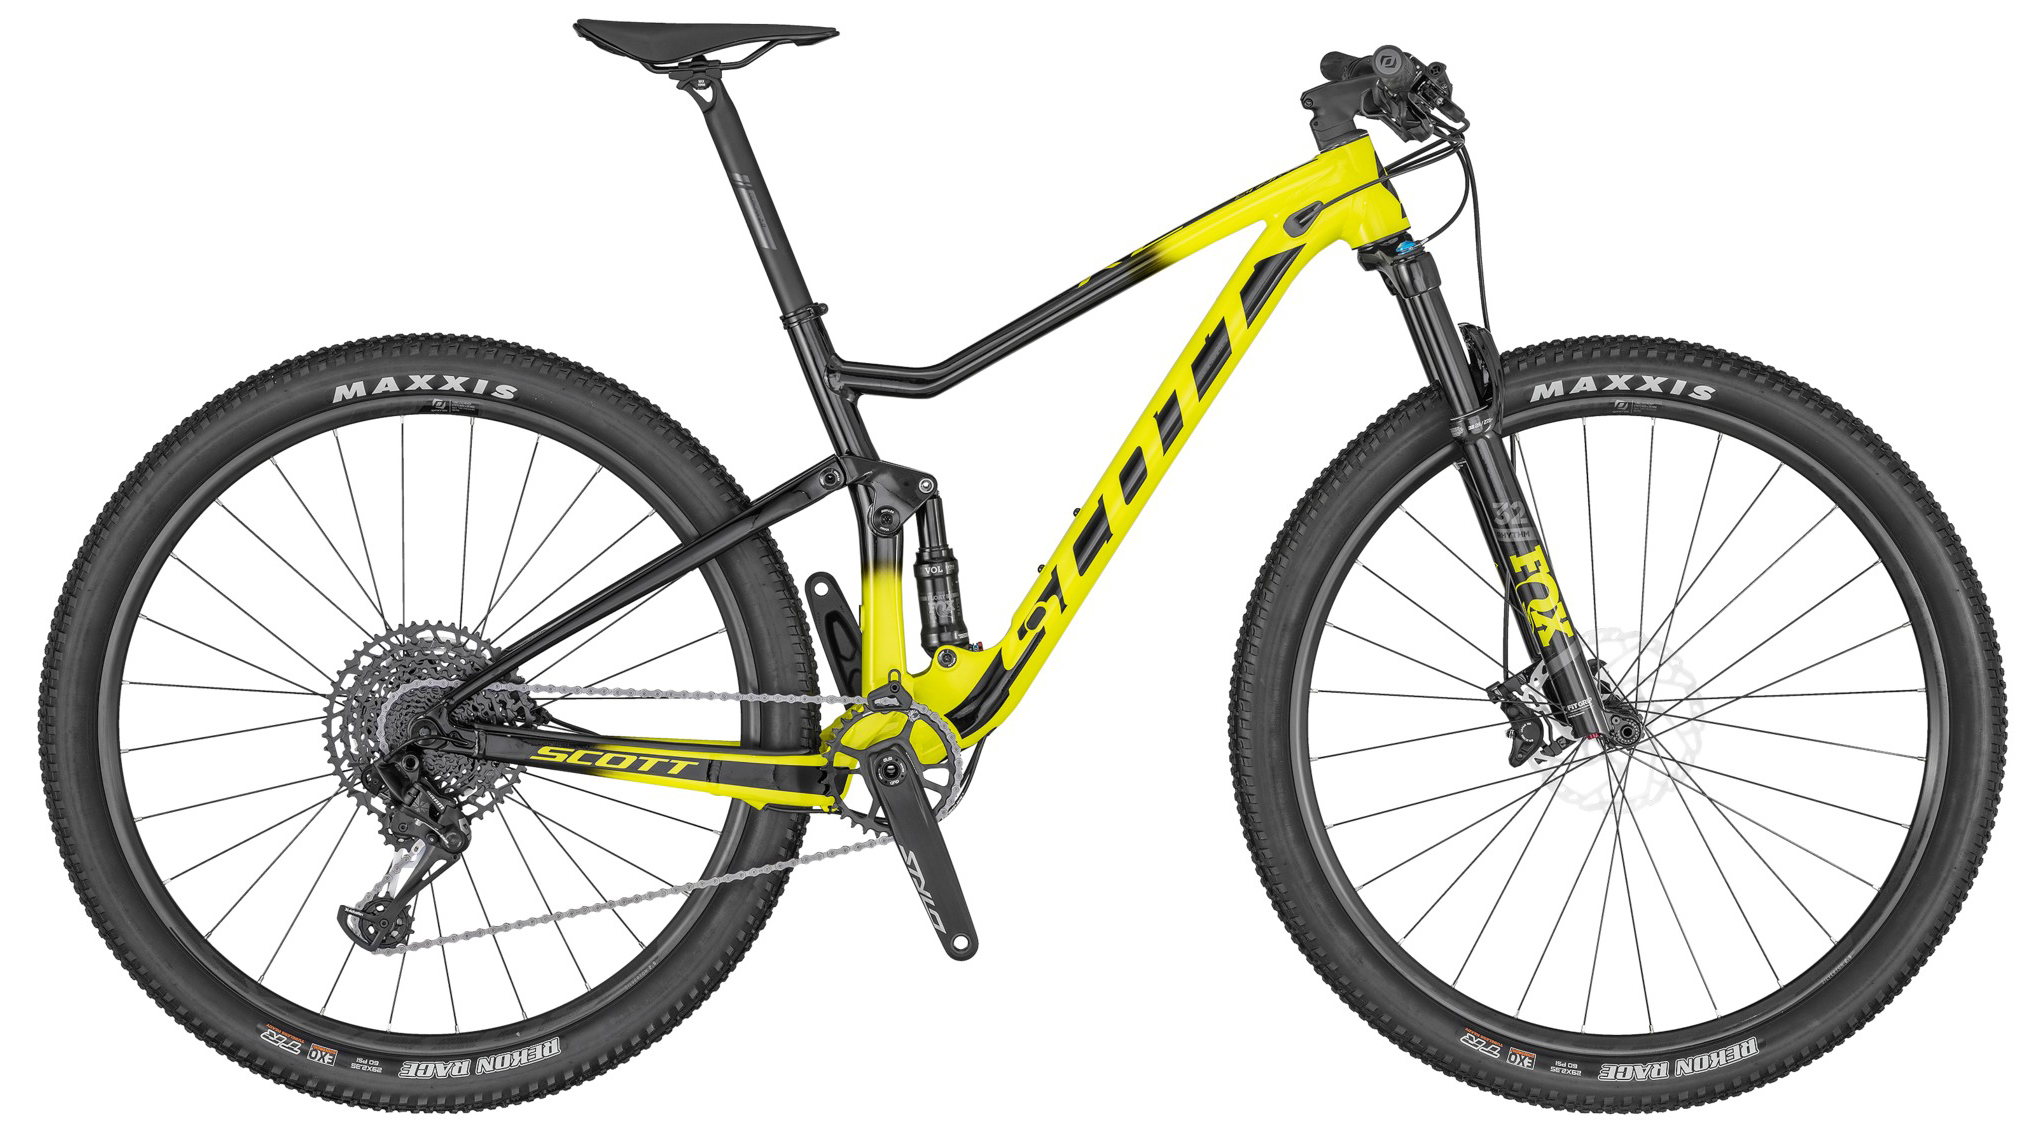  Отзывы о Двухподвесном велосипеде Scott Spark RC 900 Comp 2020